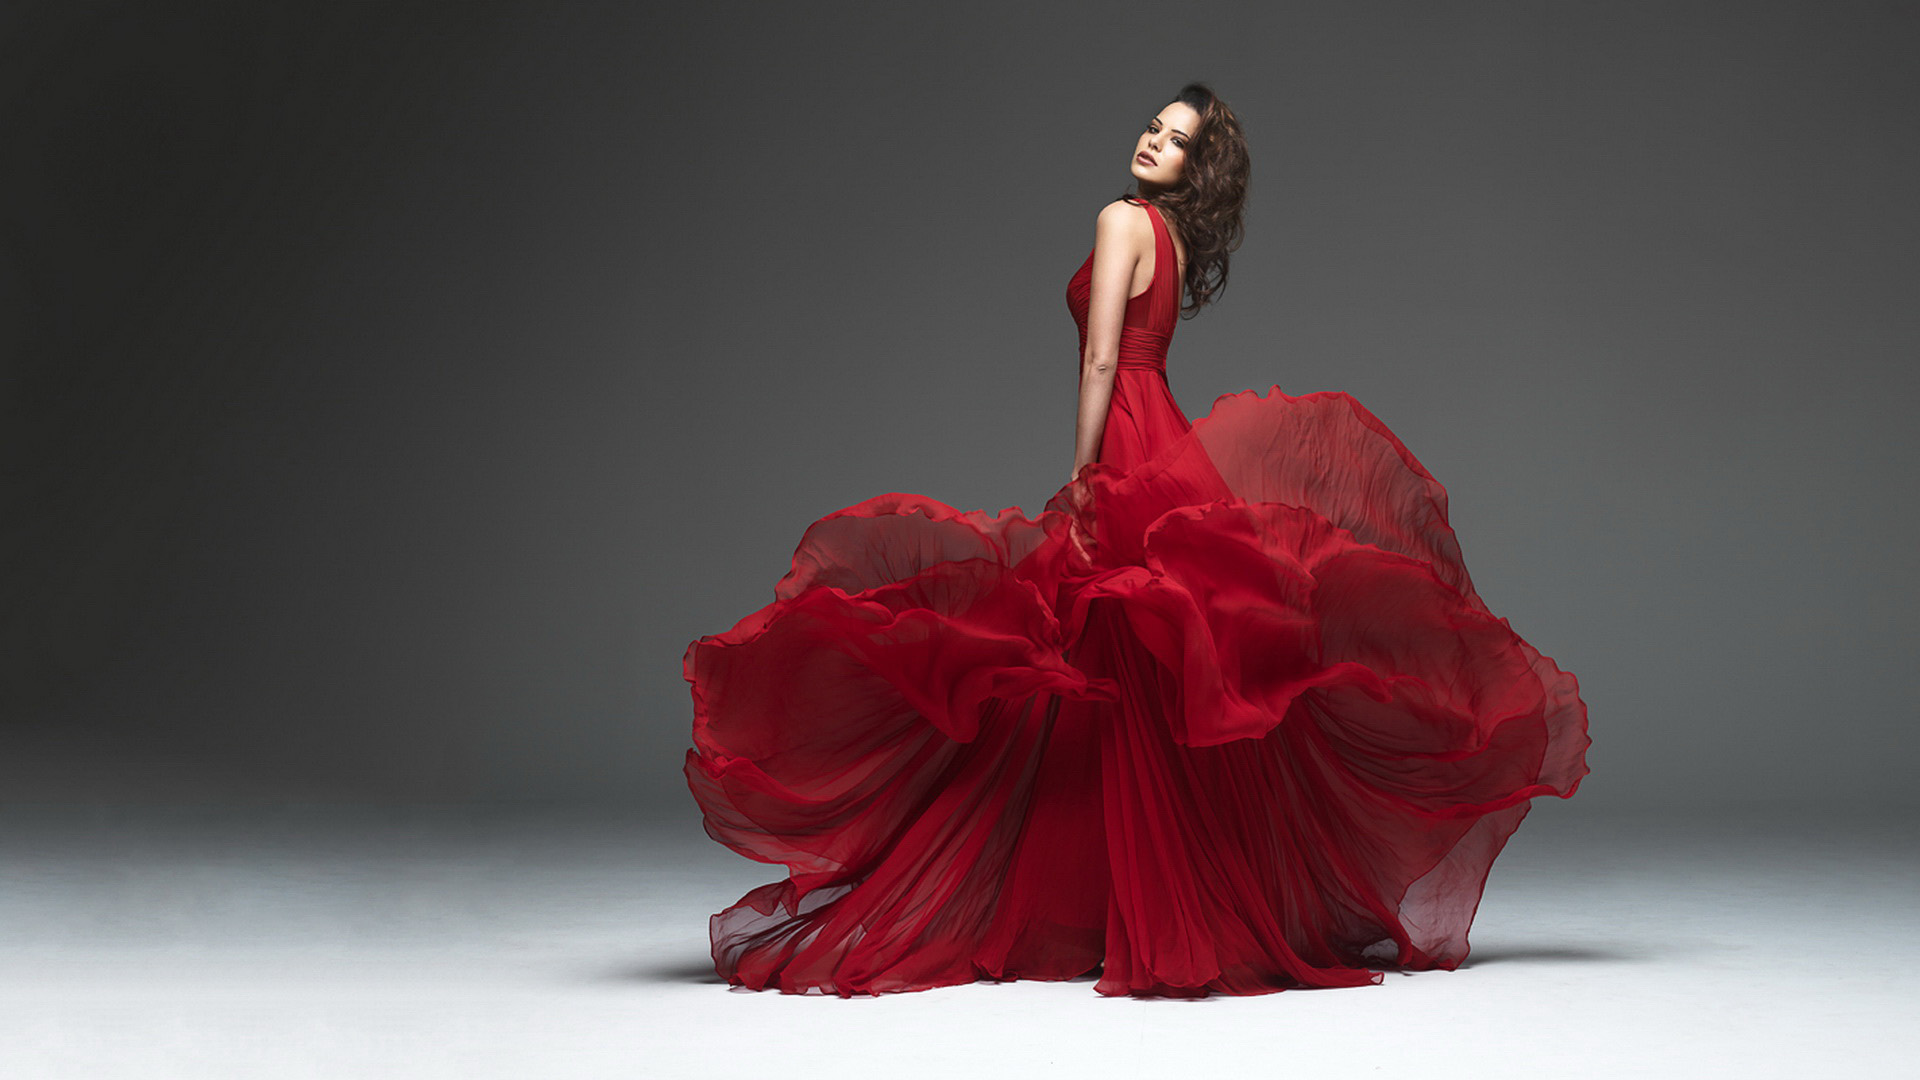 vestido de papel tapiz,vestir,vestido,rojo,ropa,modelo